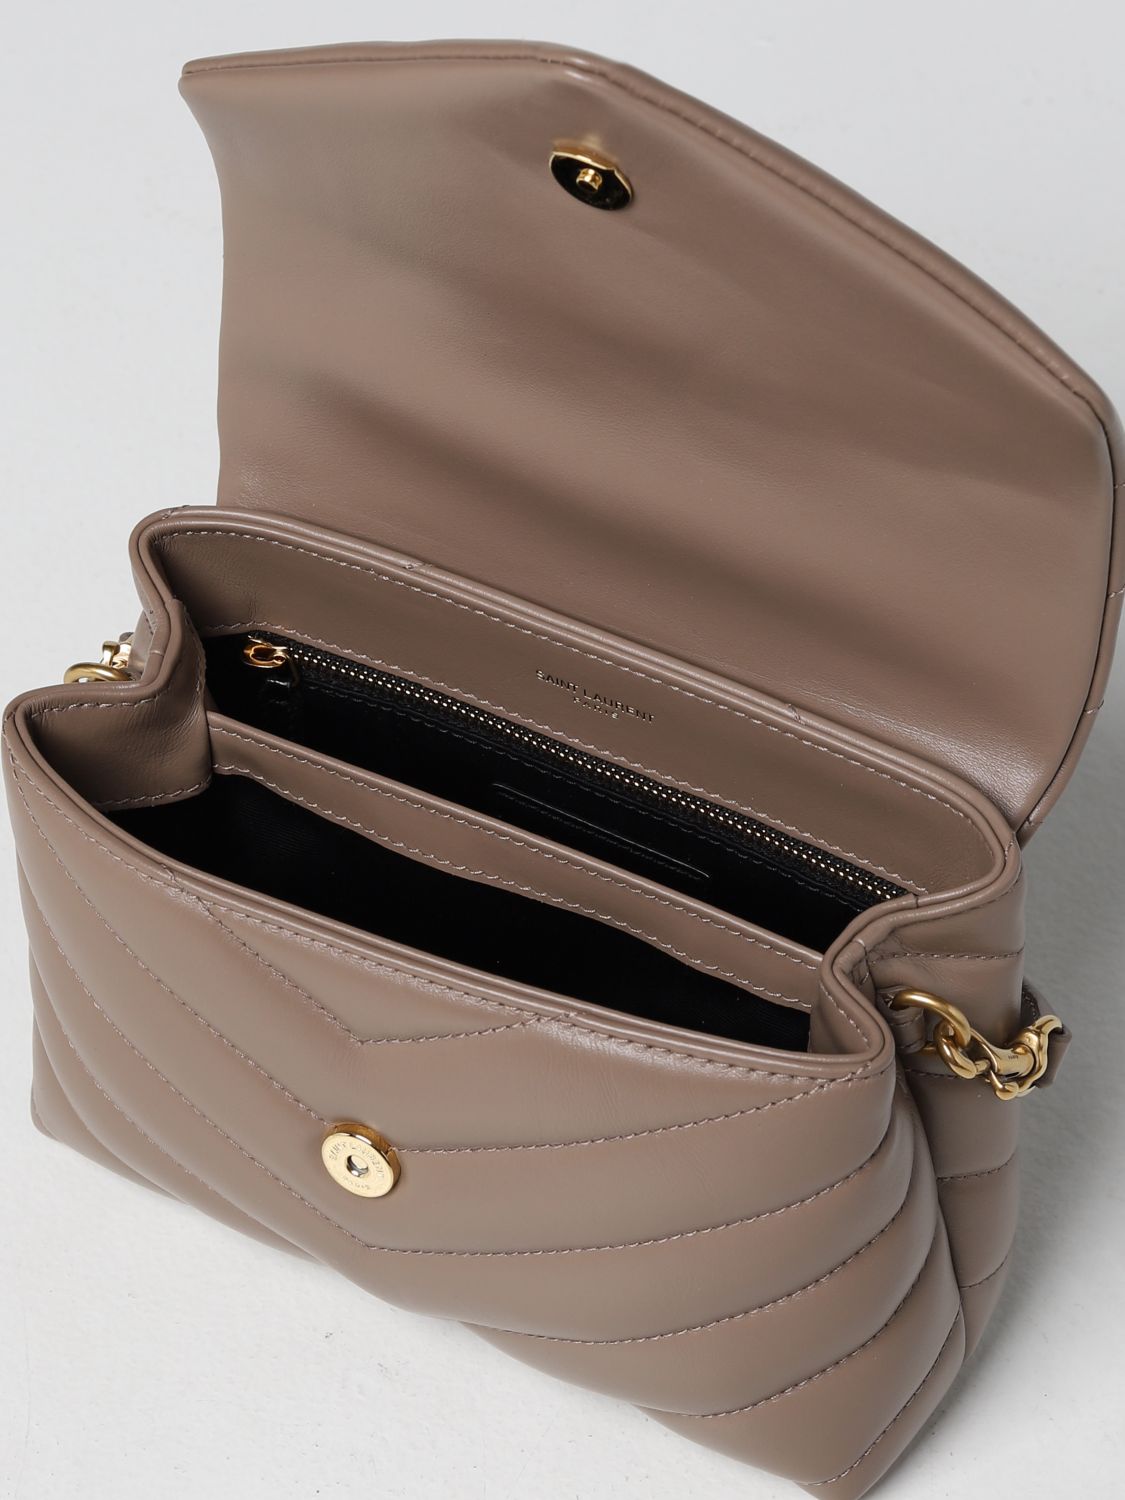 Mini sac à main Saint Laurent: Sac porté épaule femme Saint Laurent taupe 5